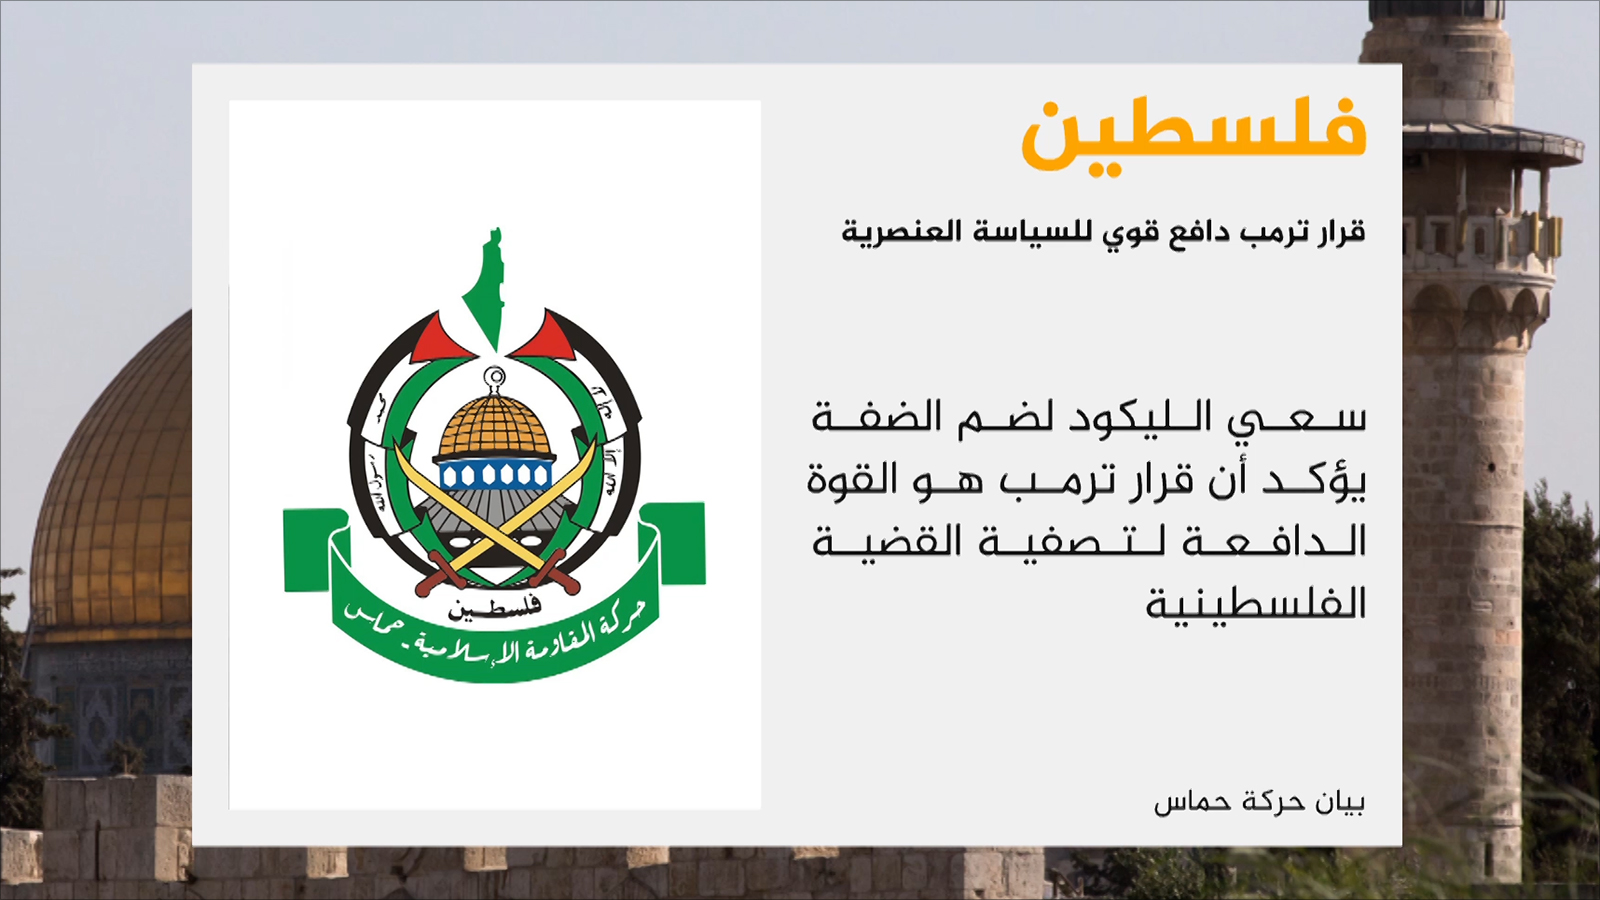 ‪حماس: قرار ترمب دافع قوي للسياسة العنصرية‬ (الجزيرة)